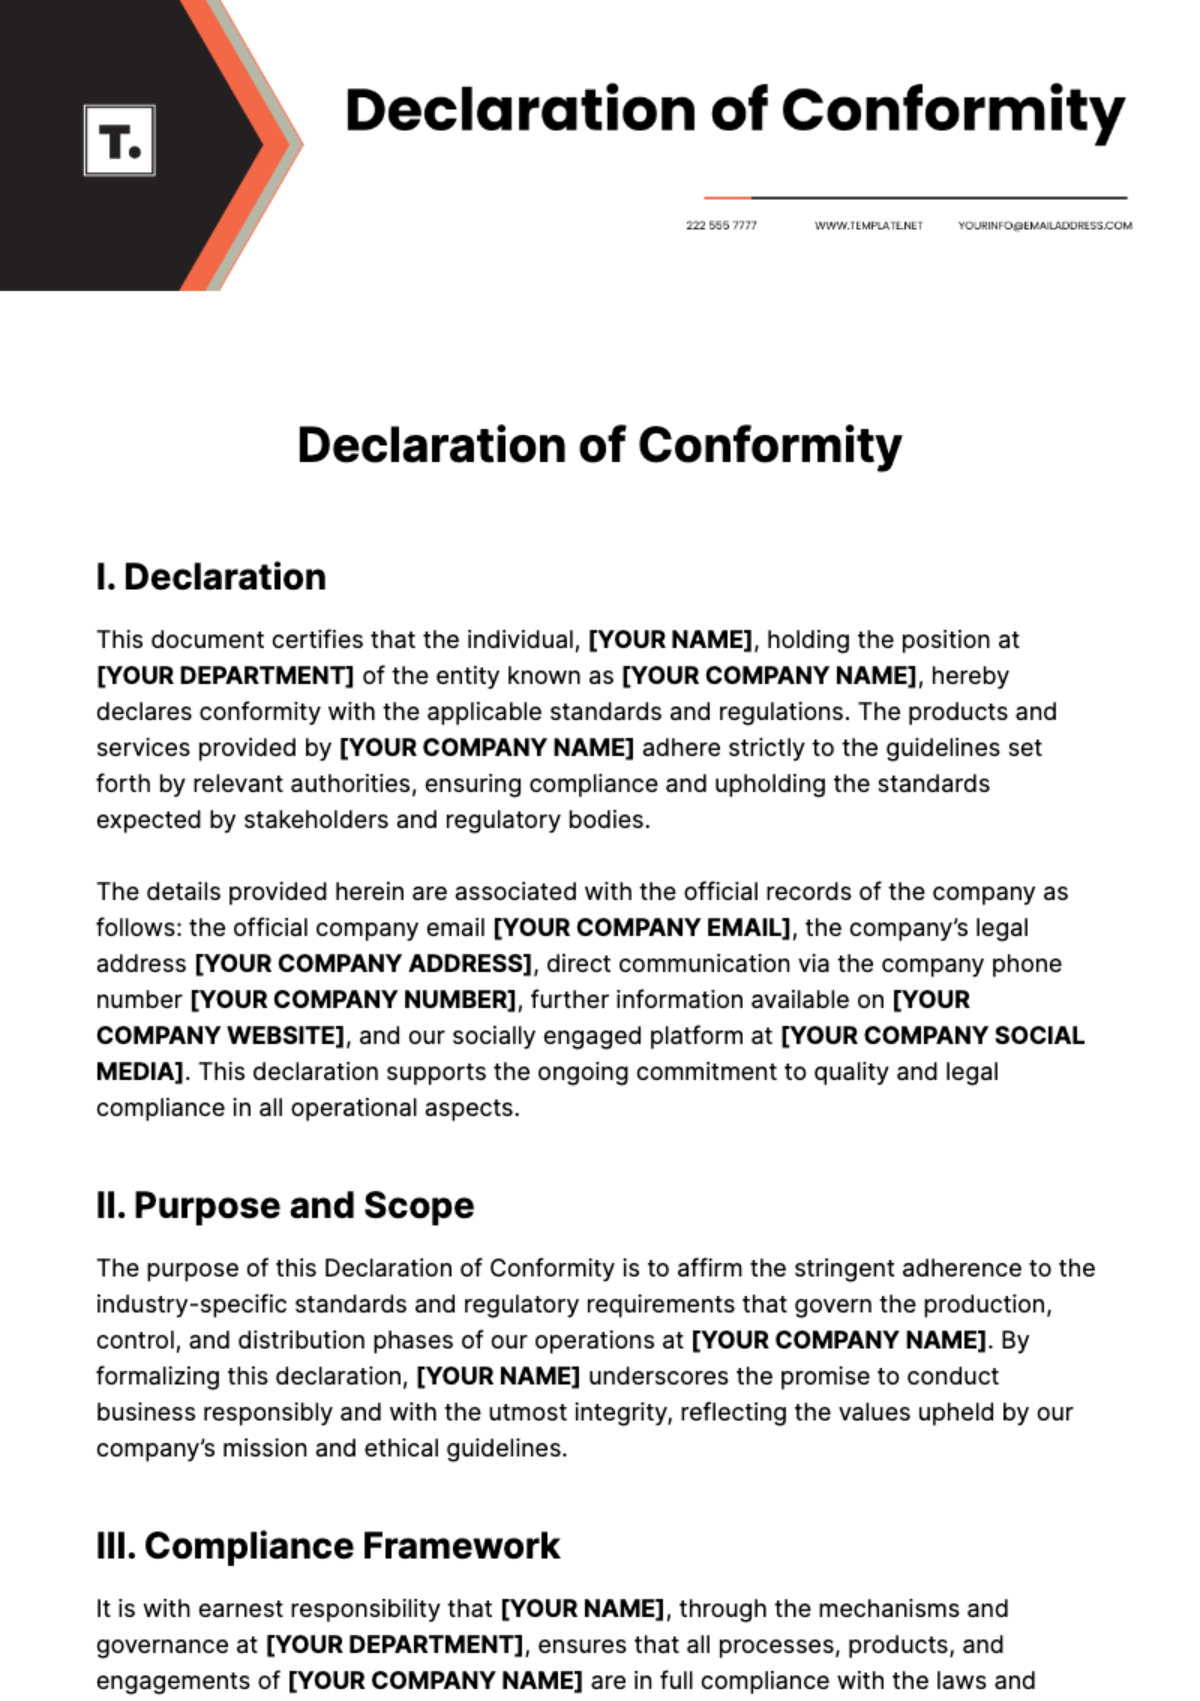 Declaration of Conformity Template